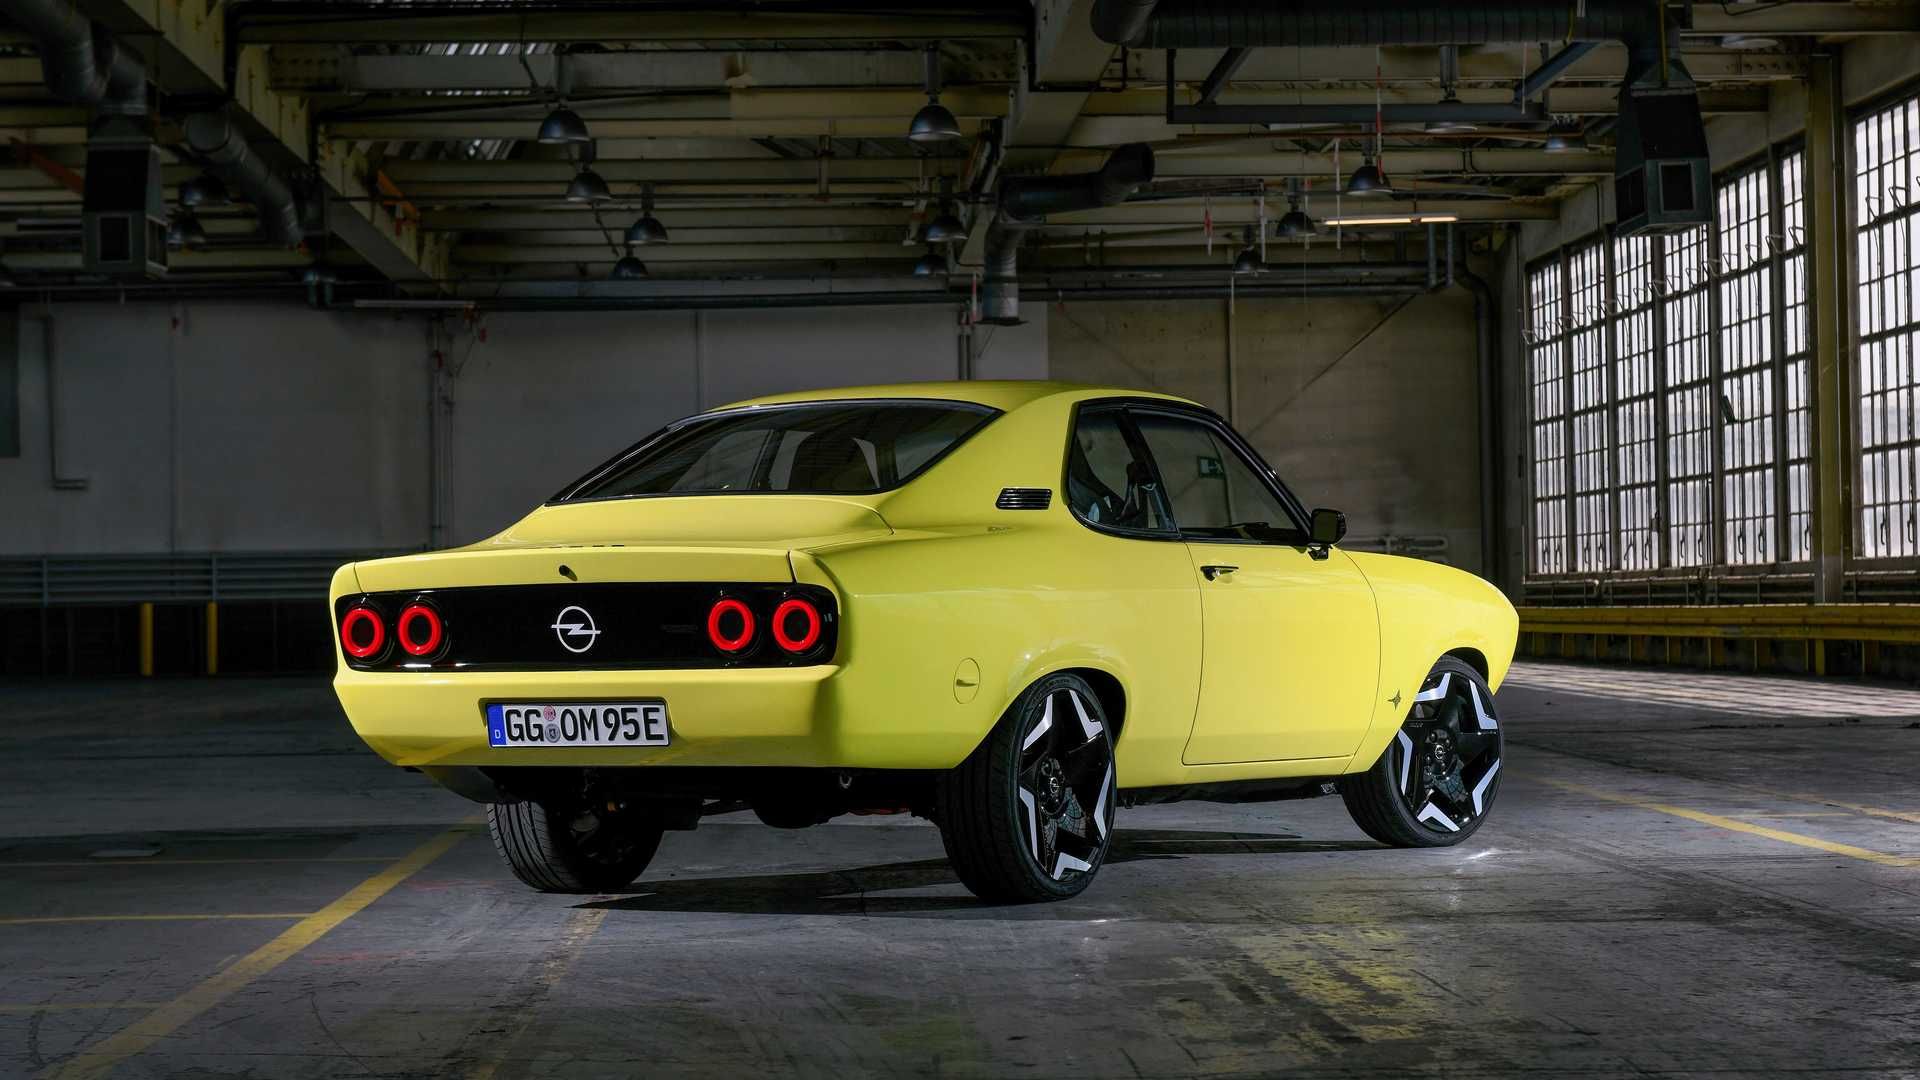 نمای سه چهارم عقب اوپل مانتا جی اس ای الکترومود / Opel Manta GSe ElektroMOD زرد رنگ